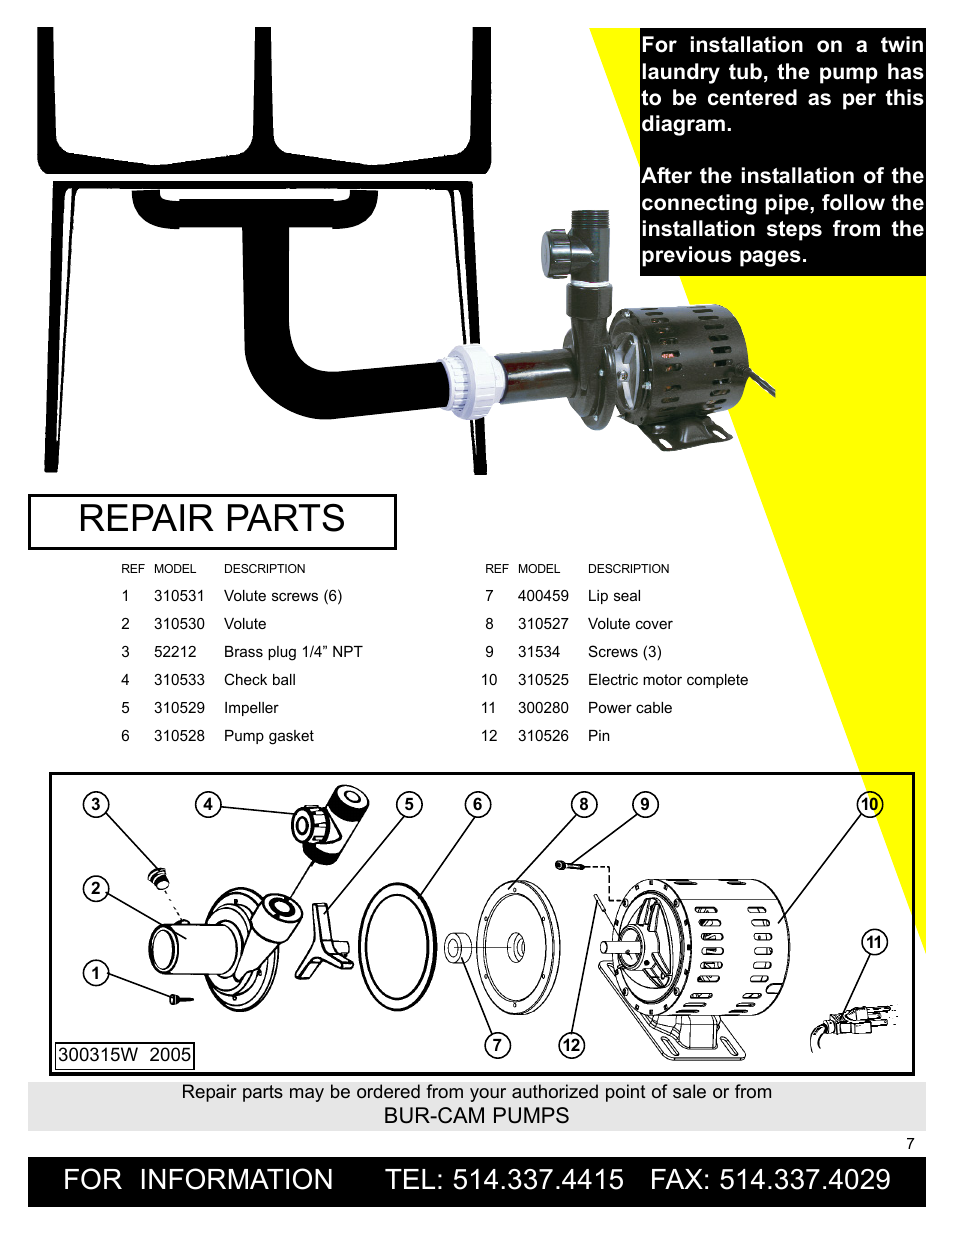 Repair Parts Bur Cam Pumps Burcam 300315w Laundry Tub